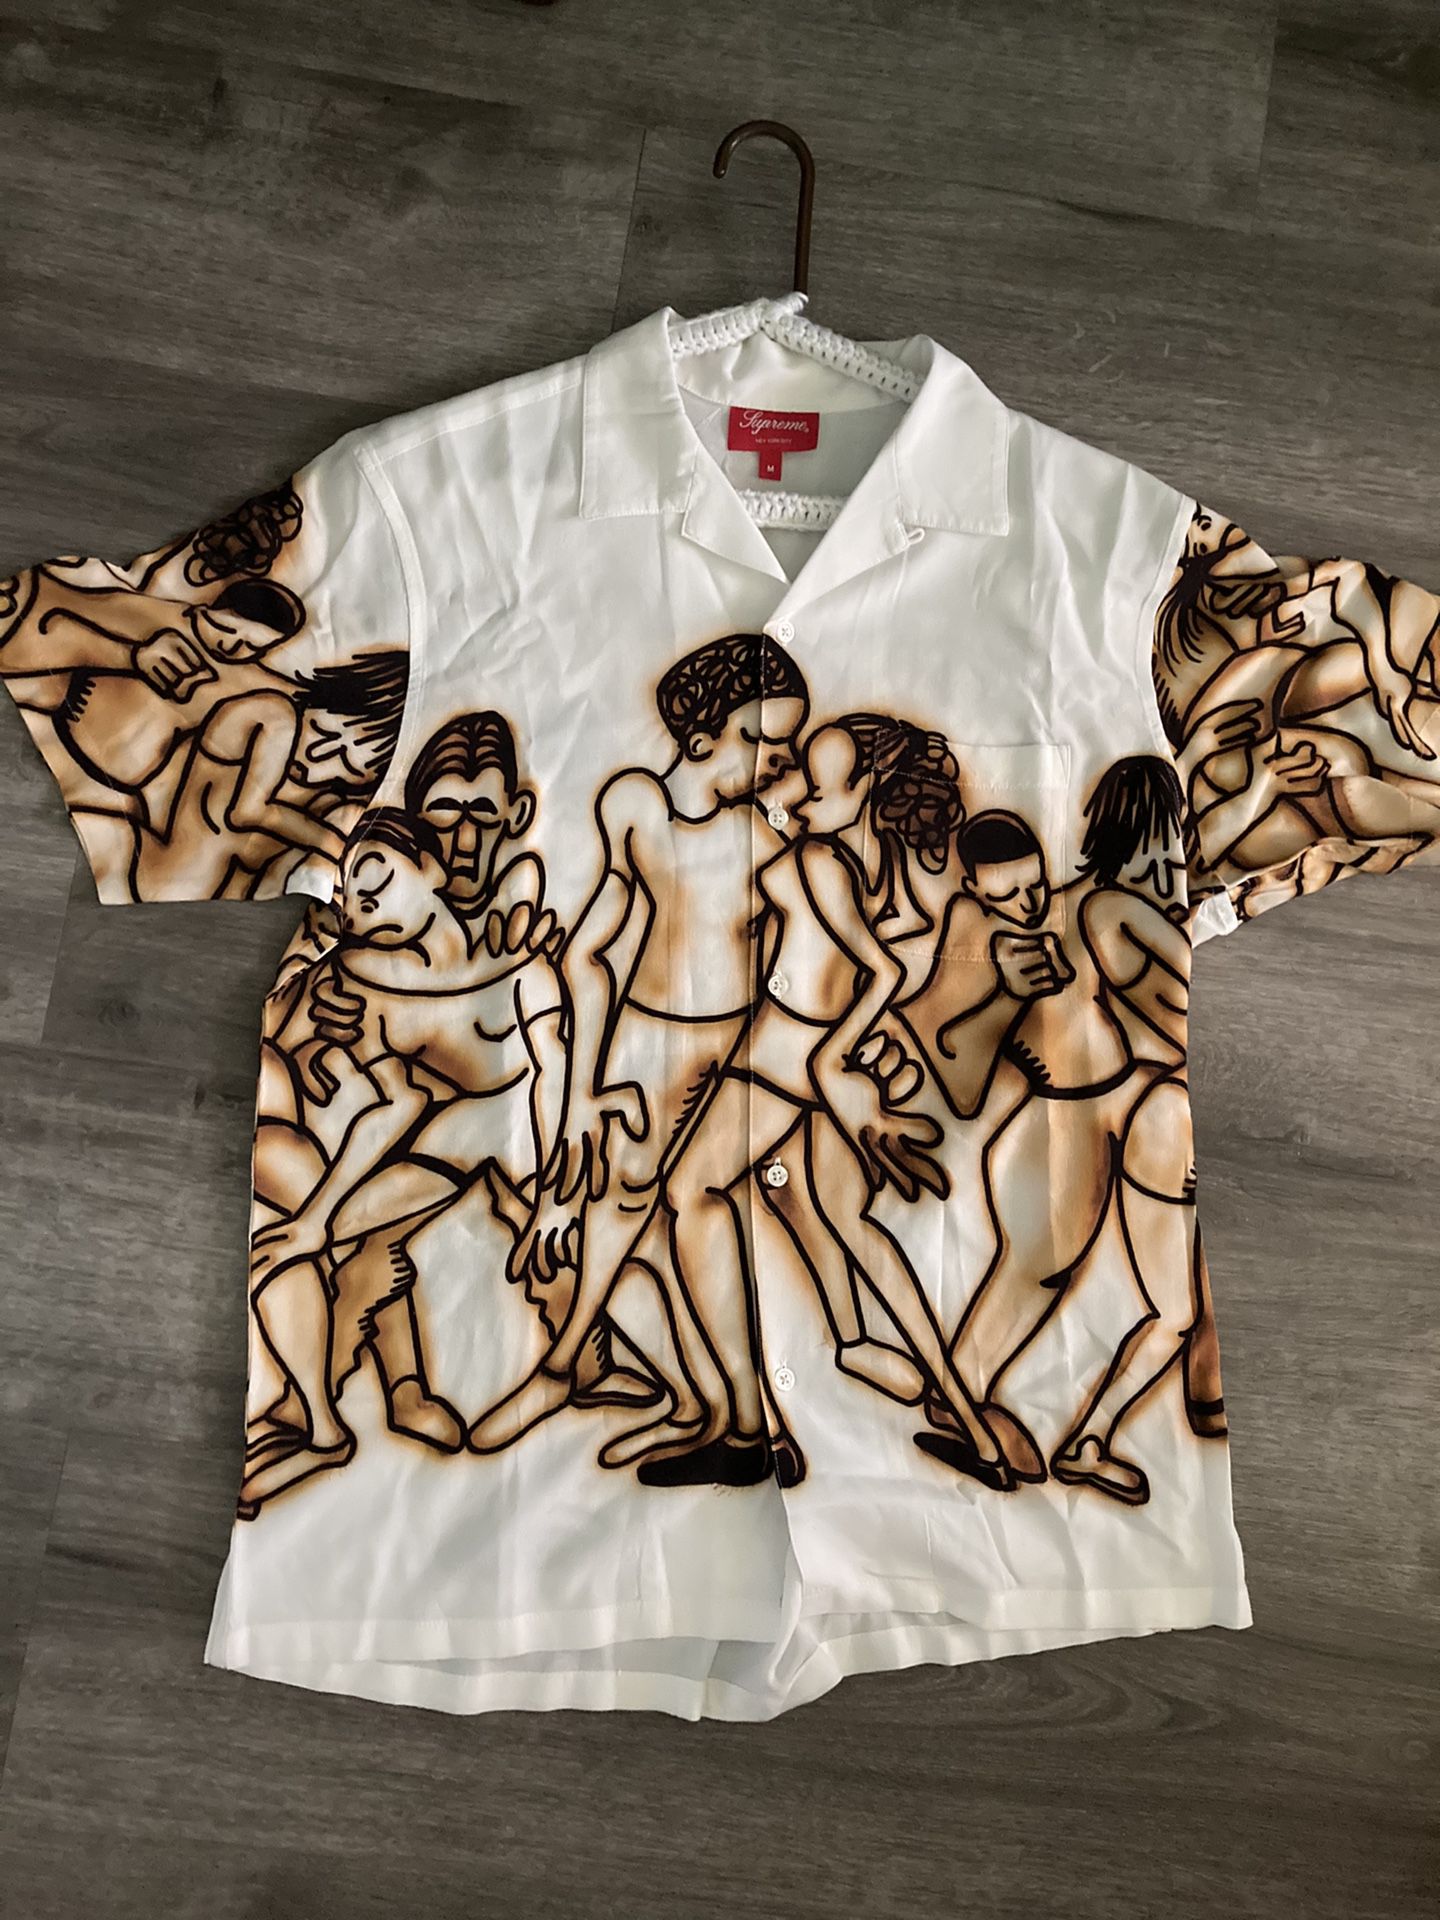 Supreme Dancing rayon shirt